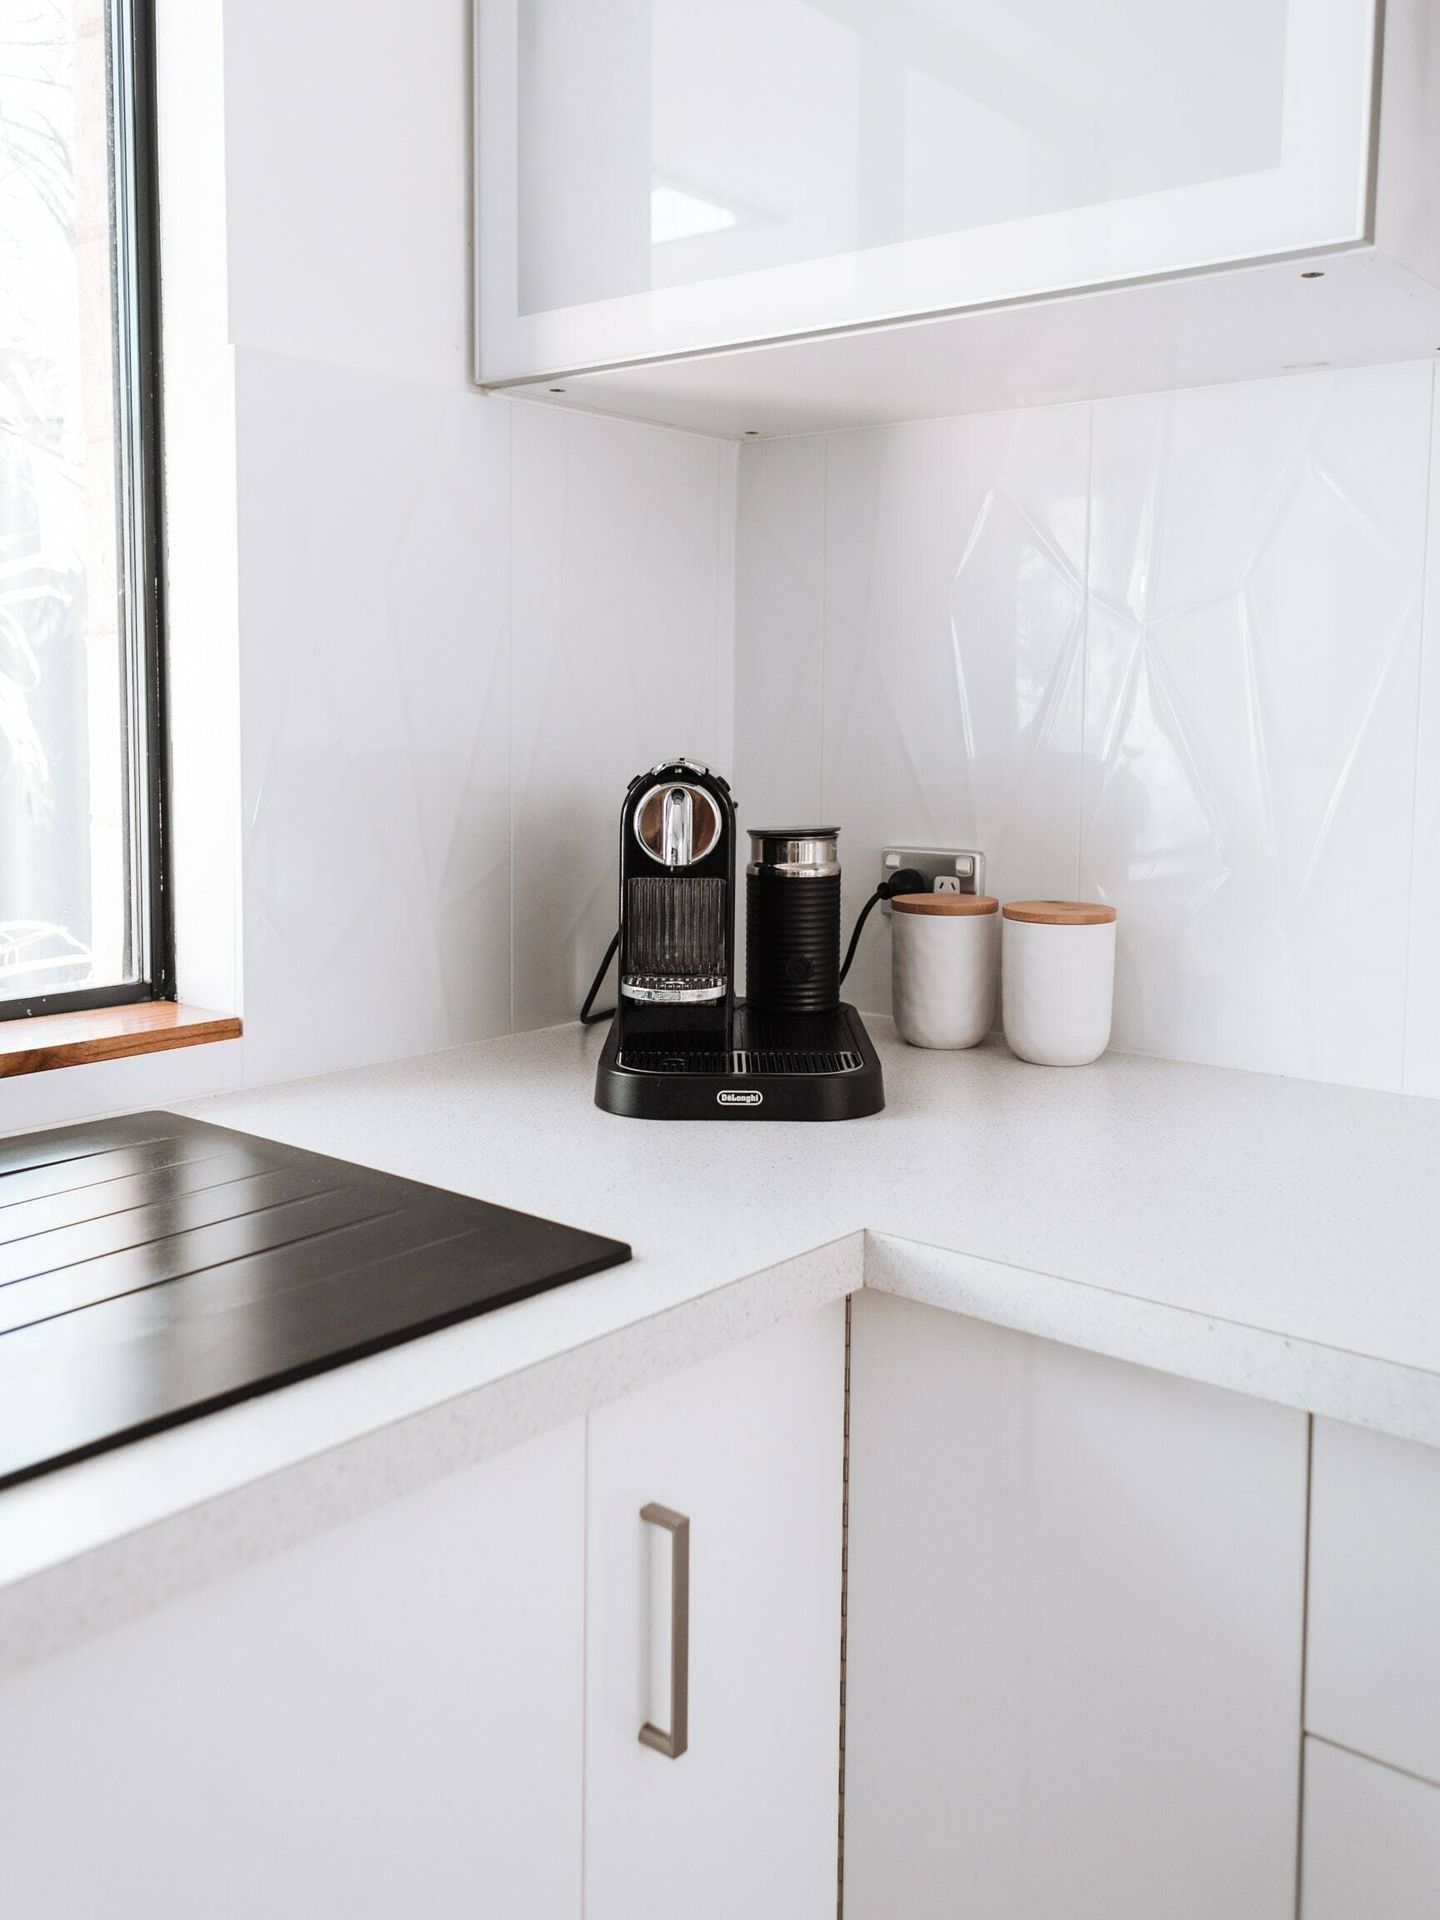 Con este mueble podrás organizar tus pequeños electrodomésticos de una forma más eficiente. (Pexels/ Rachel Claire)